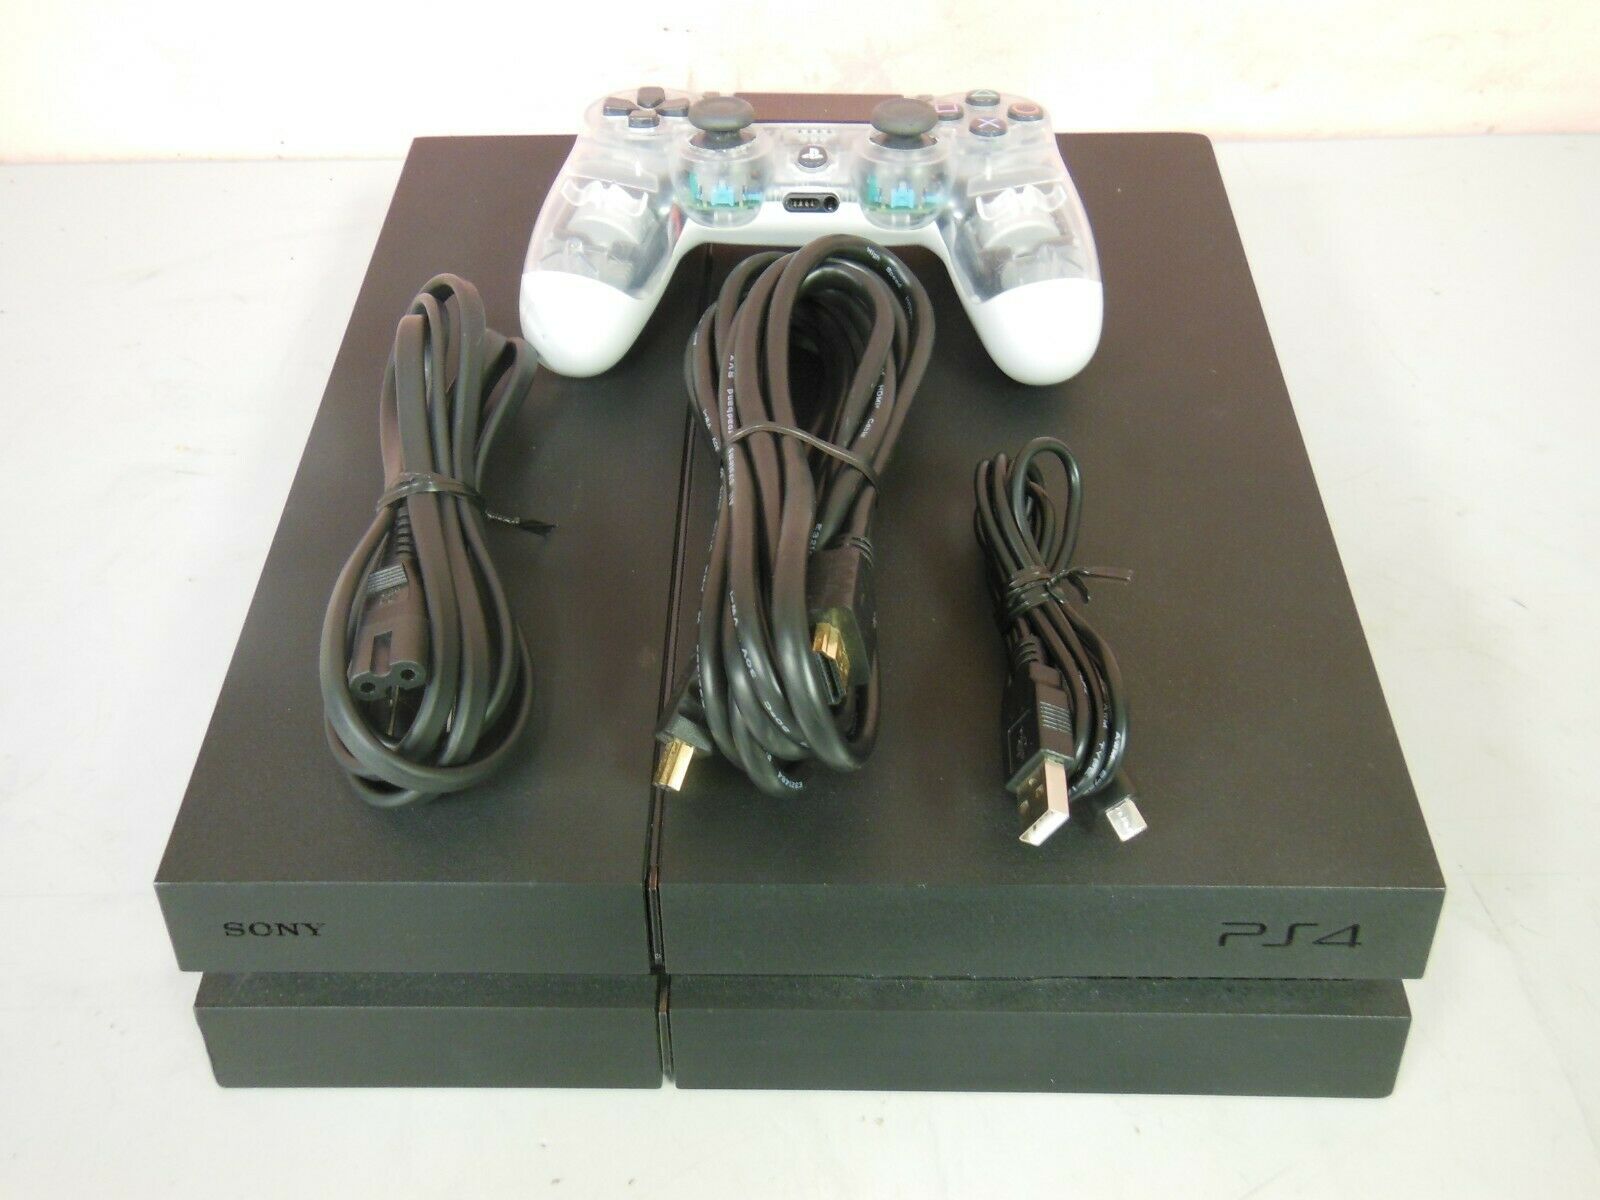 Sony PlayStation 4 CUH-1001A 500GB Gaming Console - Dark w/ Controller